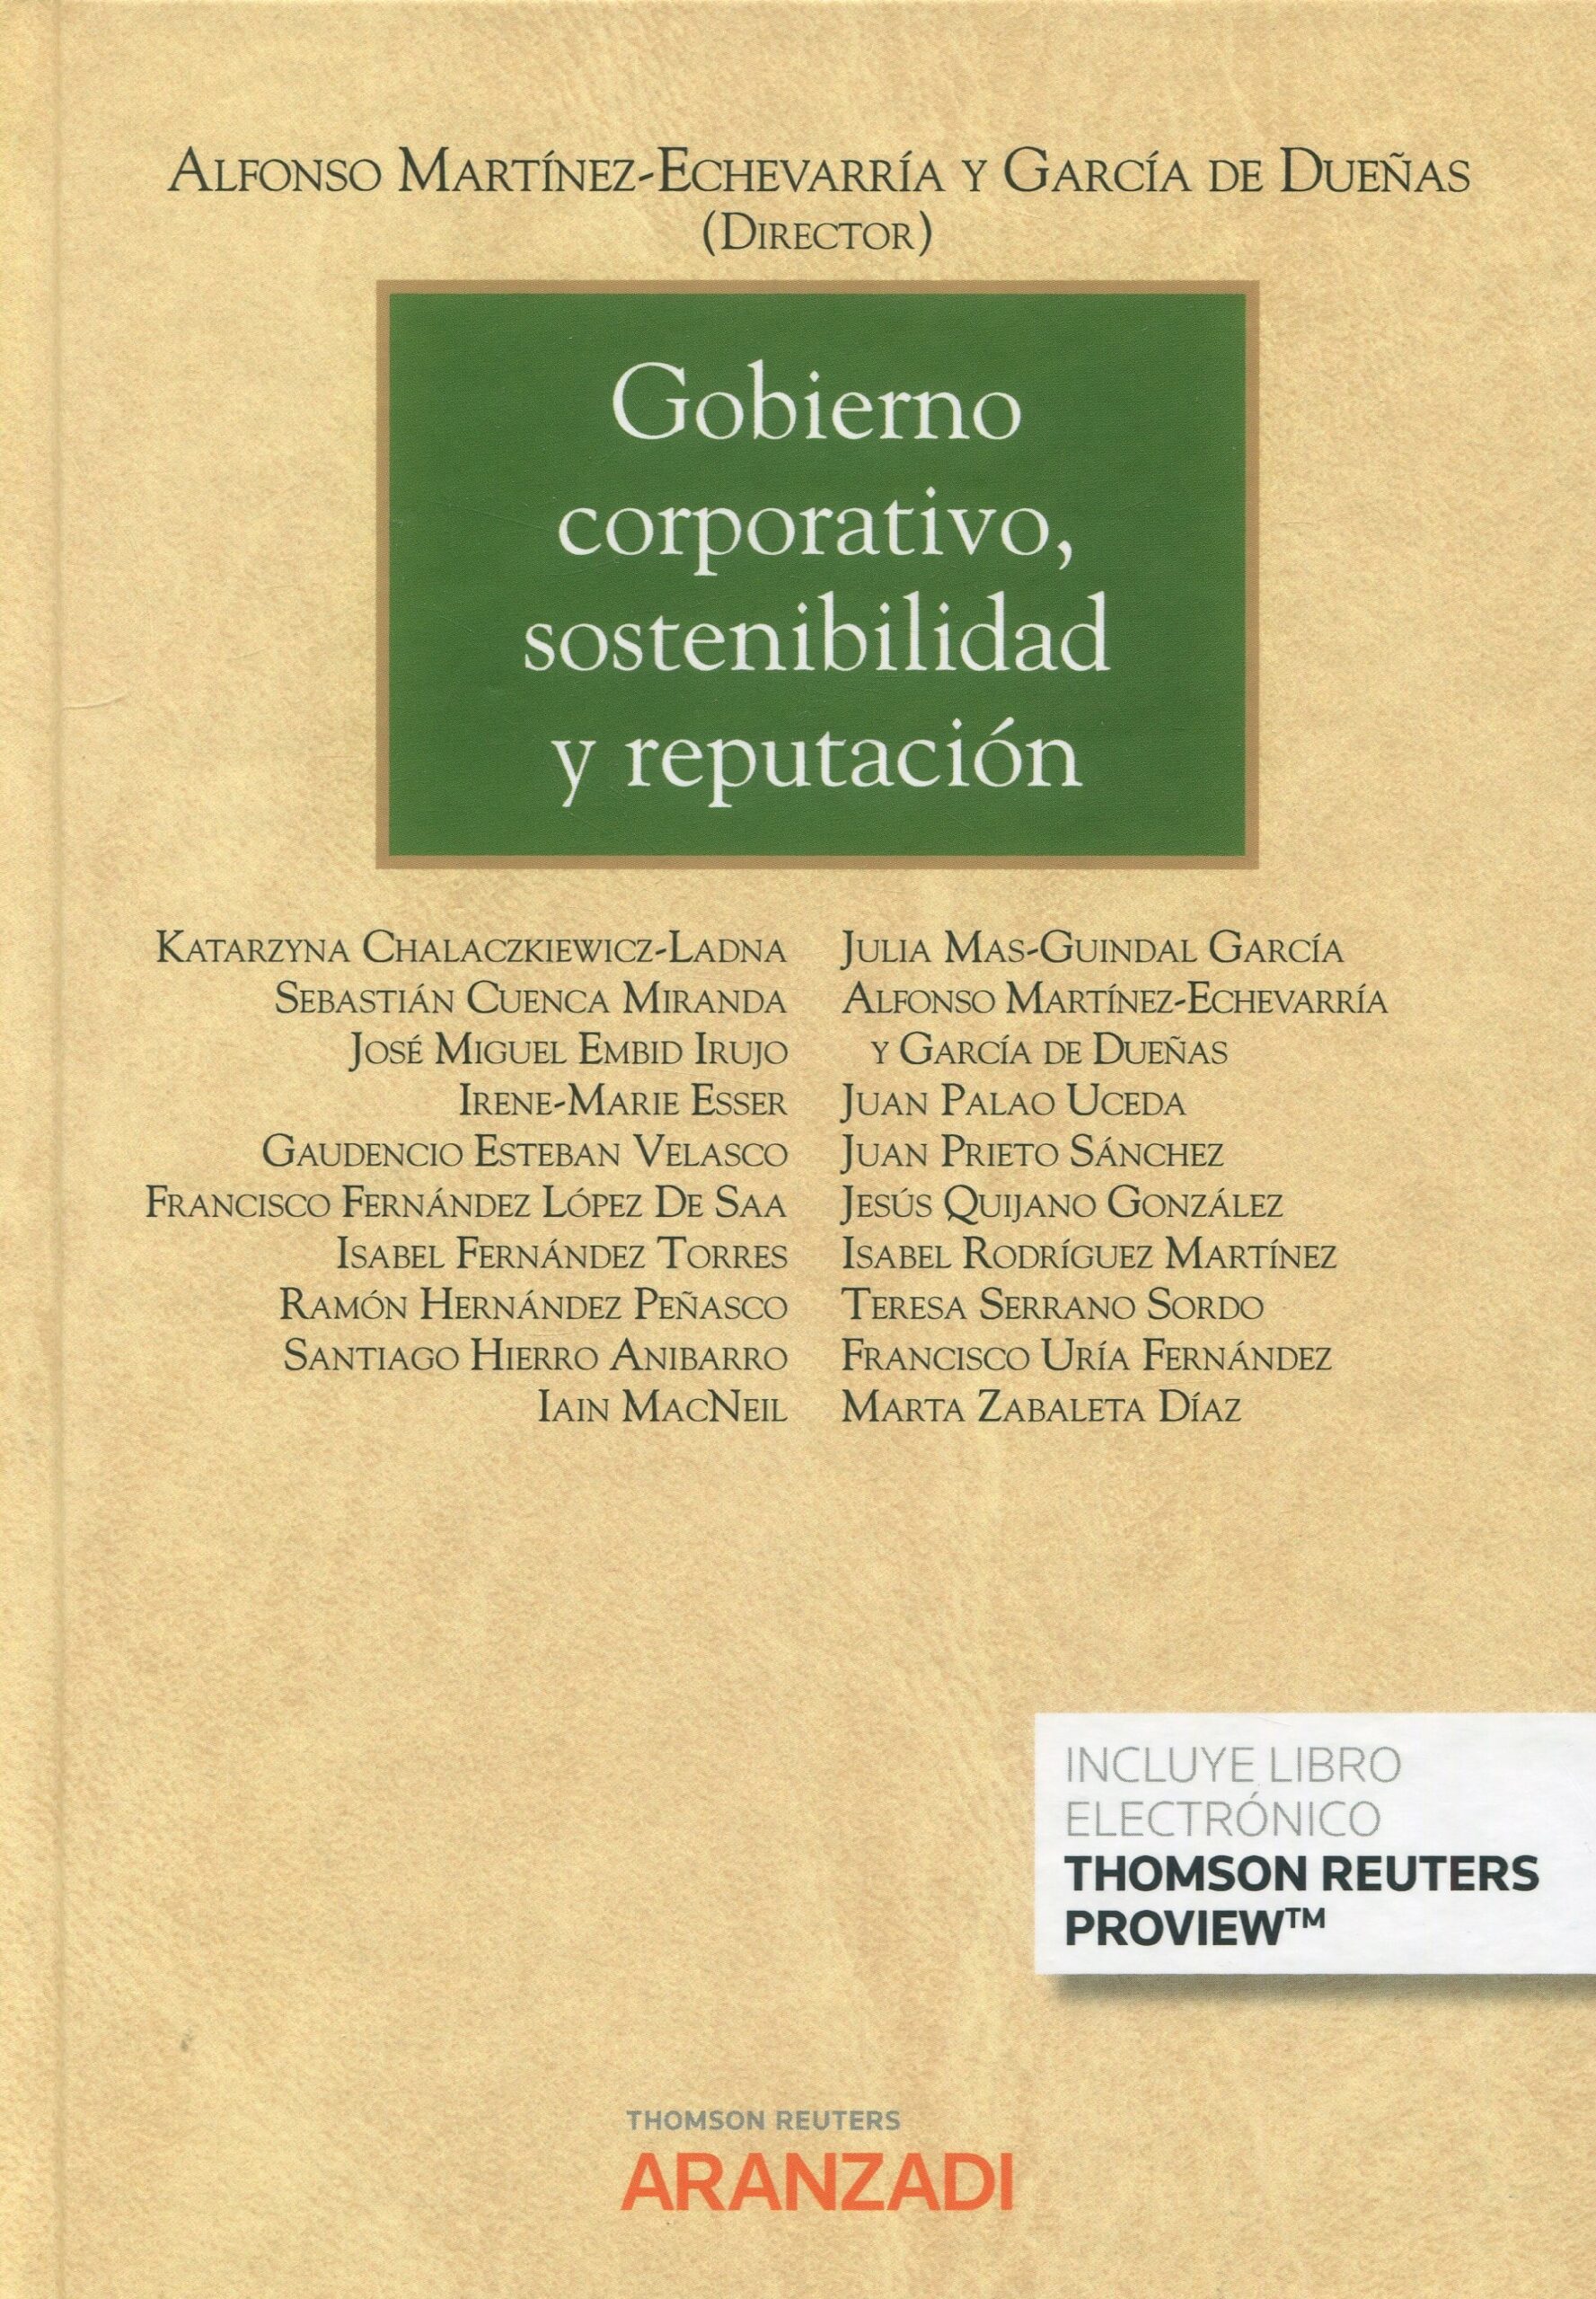 Imagen de portada del libro Gobierno corporativo, sostenibilidad y reputación